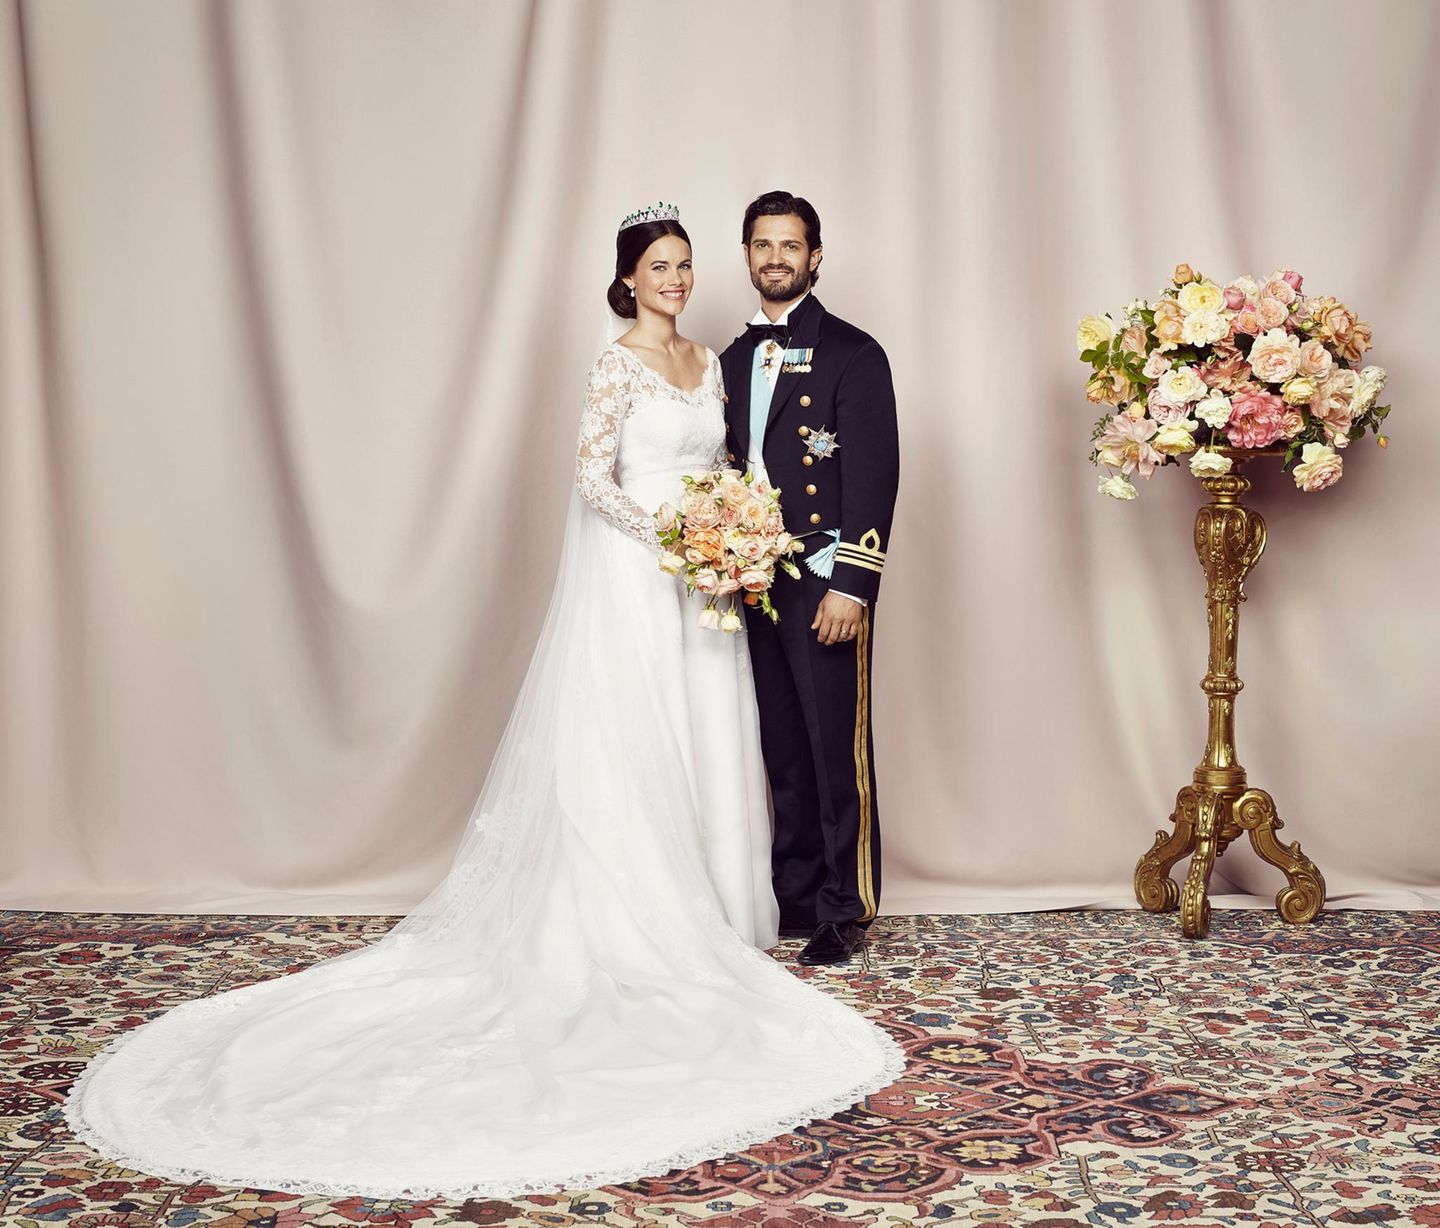 Am Tag nach der Hochzeit veröffentlicht der schwedische Palast das offizielle Hochzeitsfoto von Prinzessin Sofia und Prinz Carl Philip.